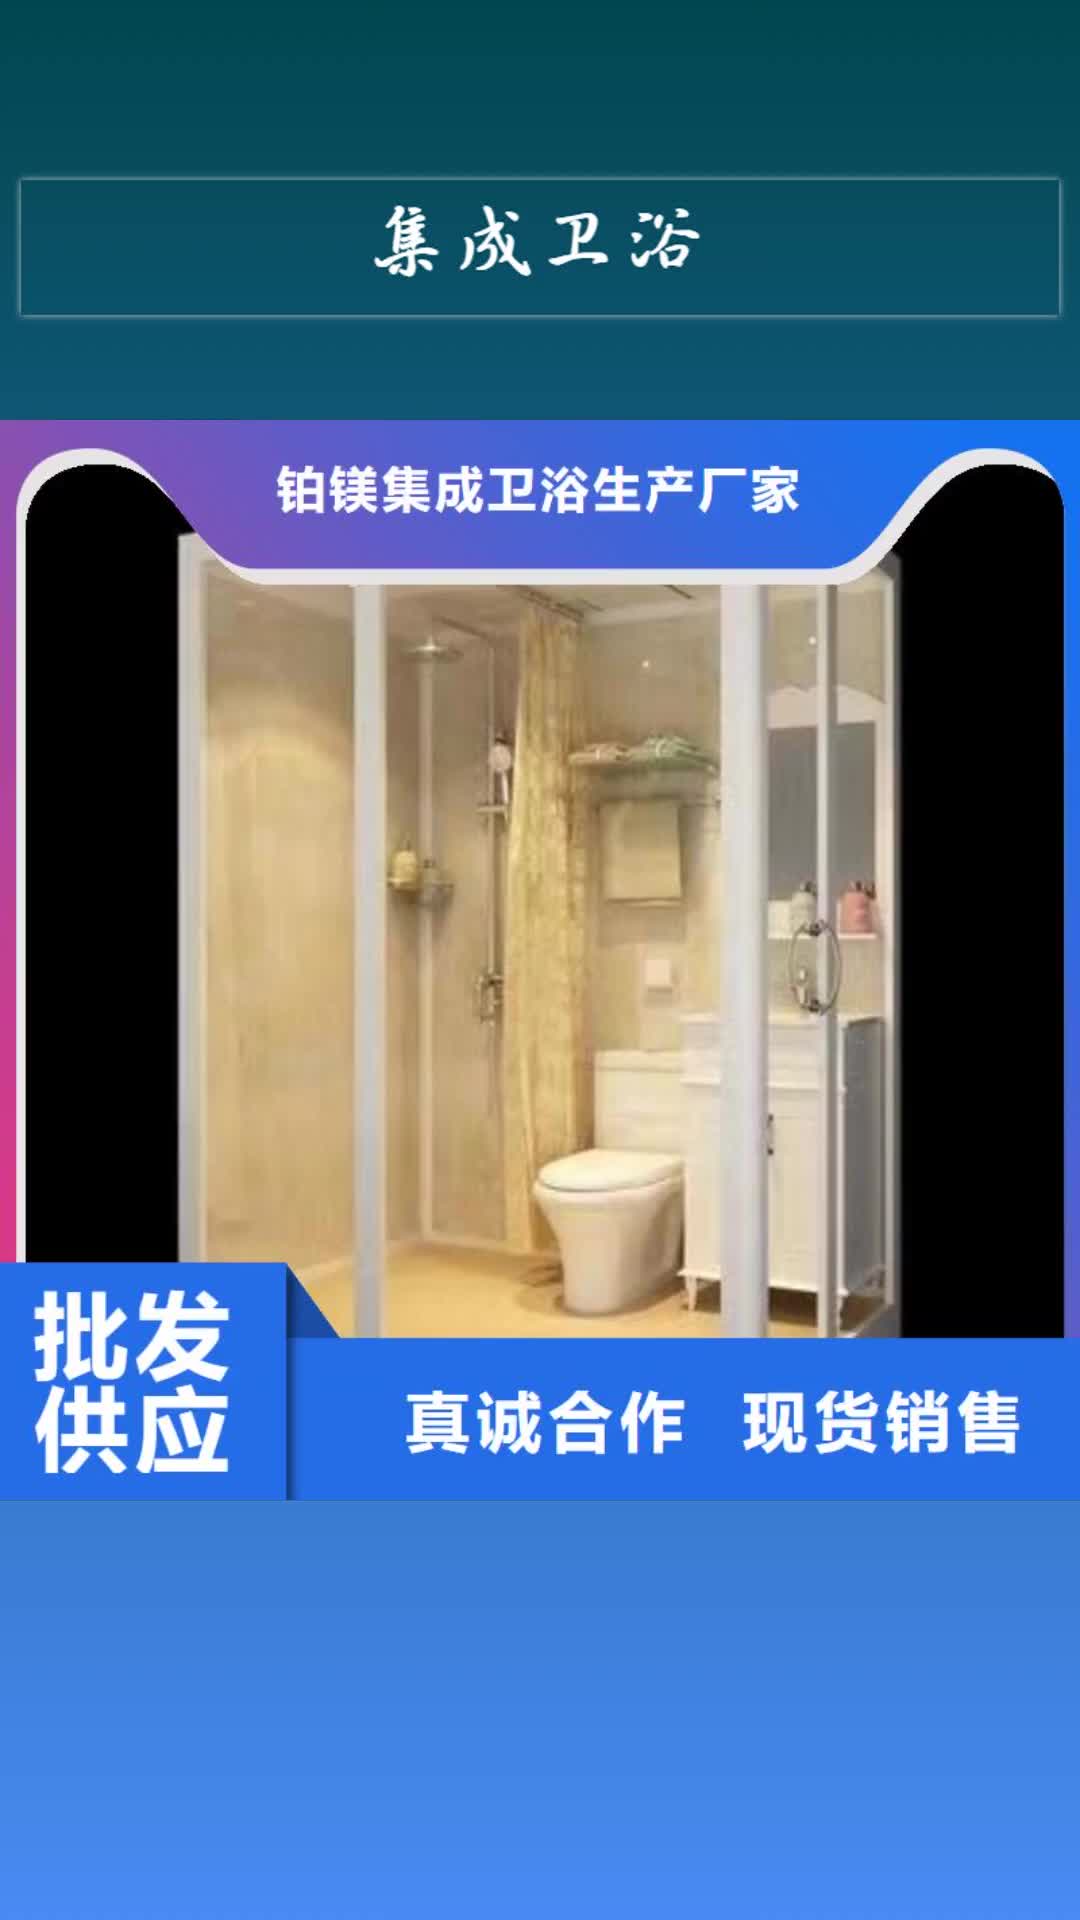 【滨州 集成卫浴装配式厕所精选货源】